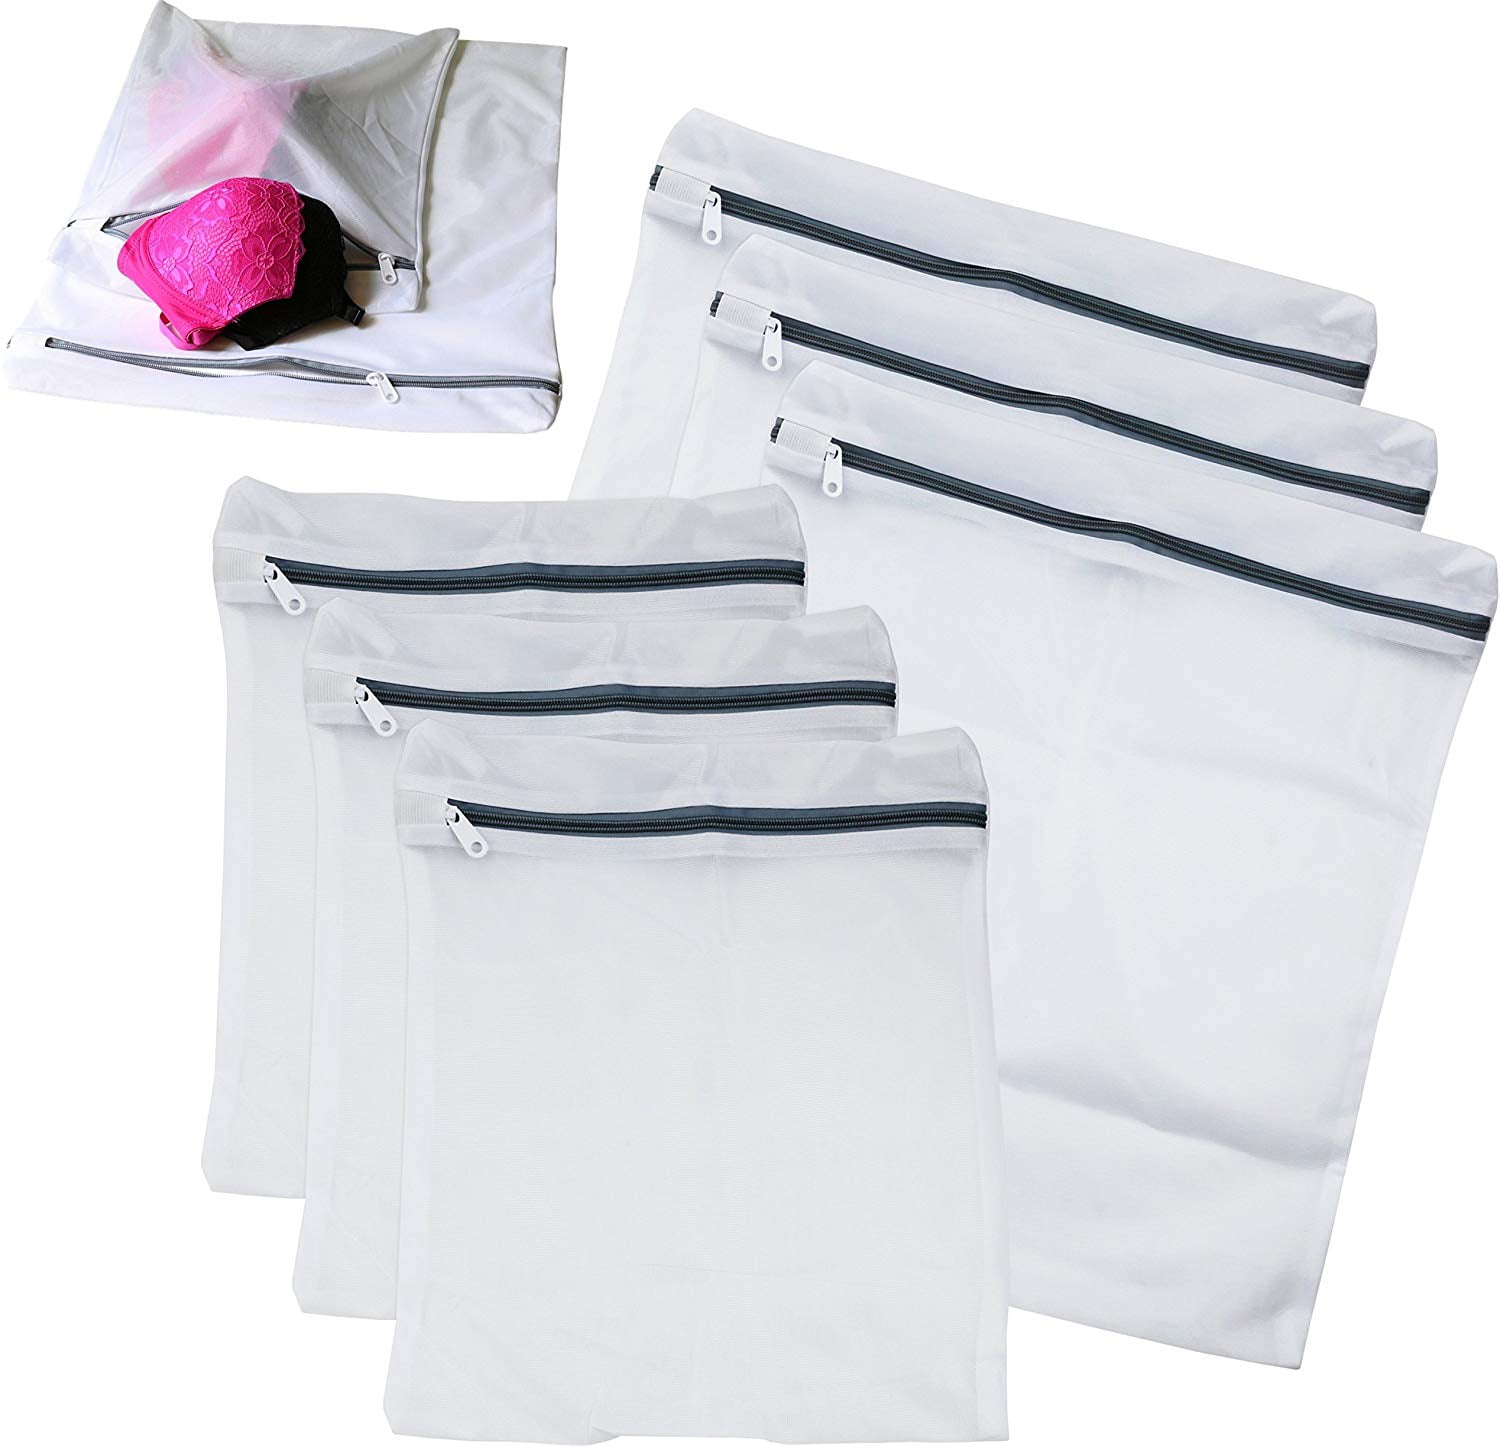 Reusable Mesh Laundry Bags Zipper Wash Bag Washing Bag For Bra Lingerie Socks